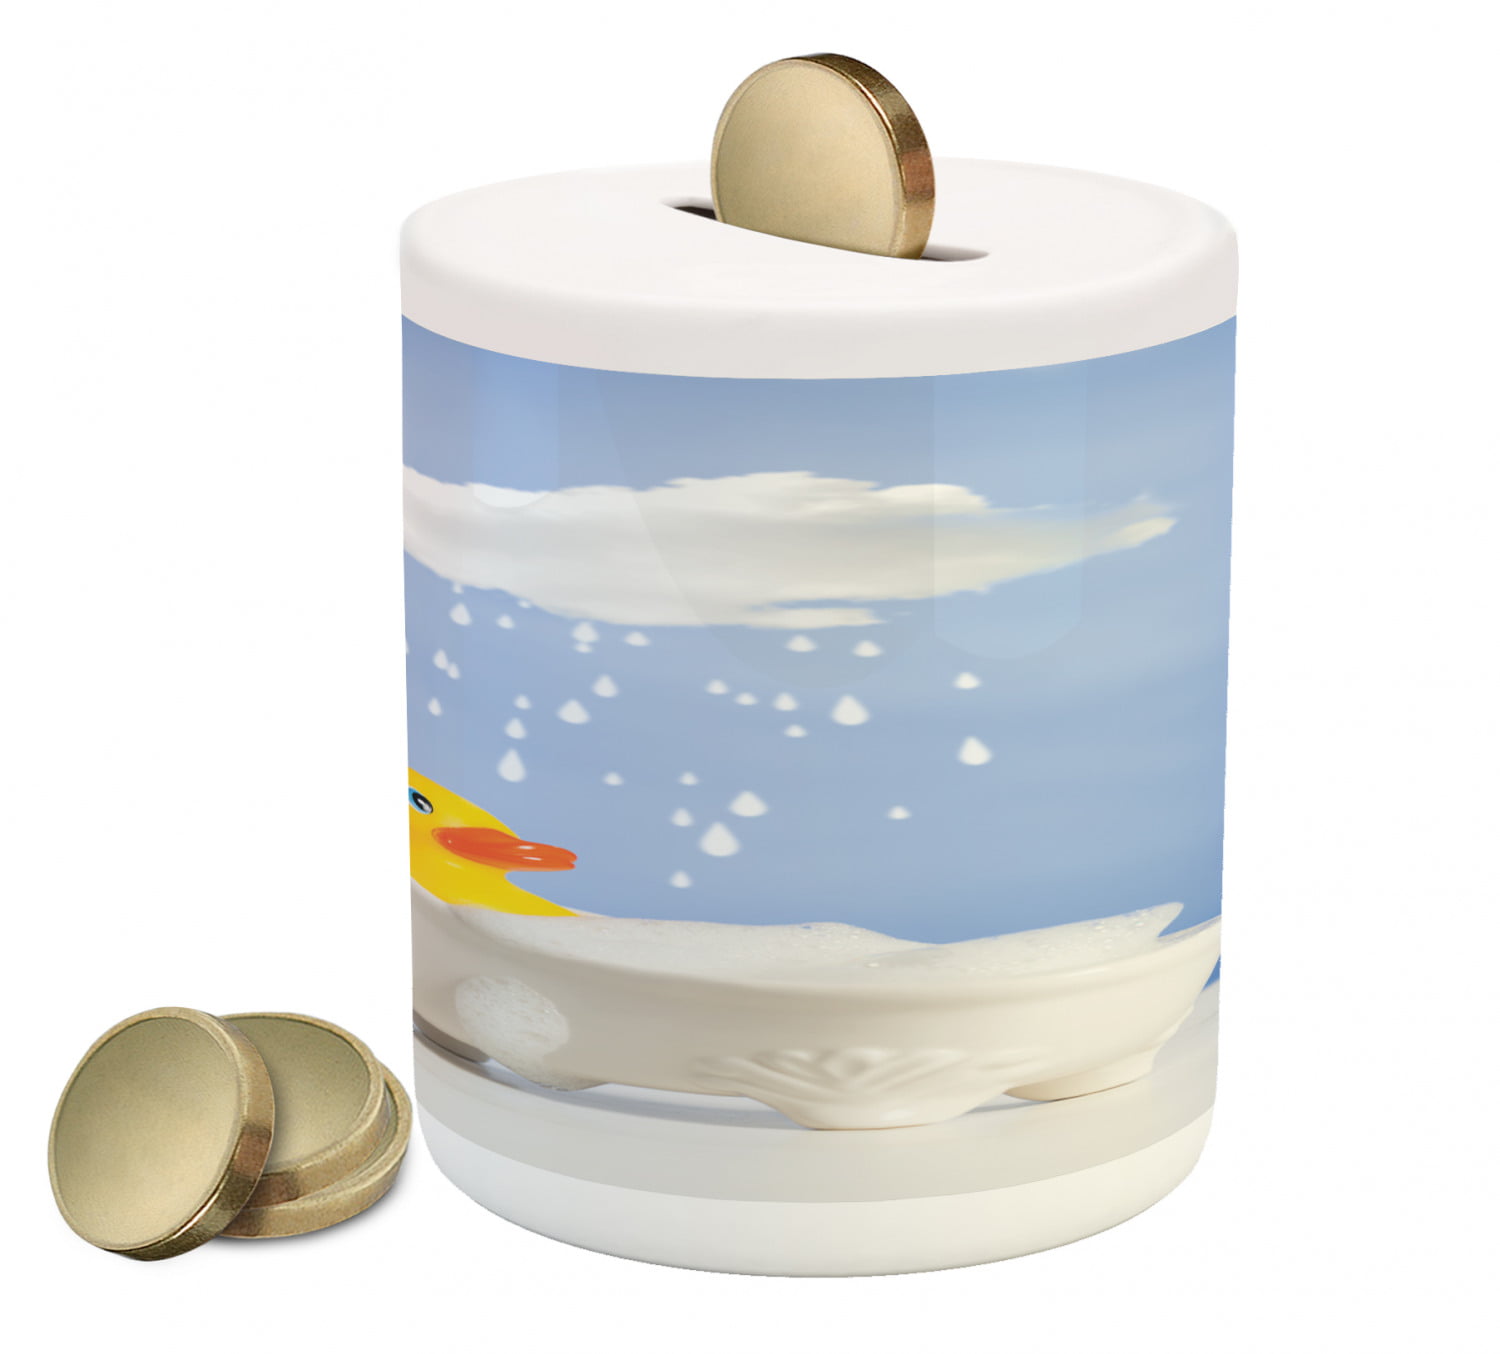 Personalised Ceramic Money Box Duck Design 